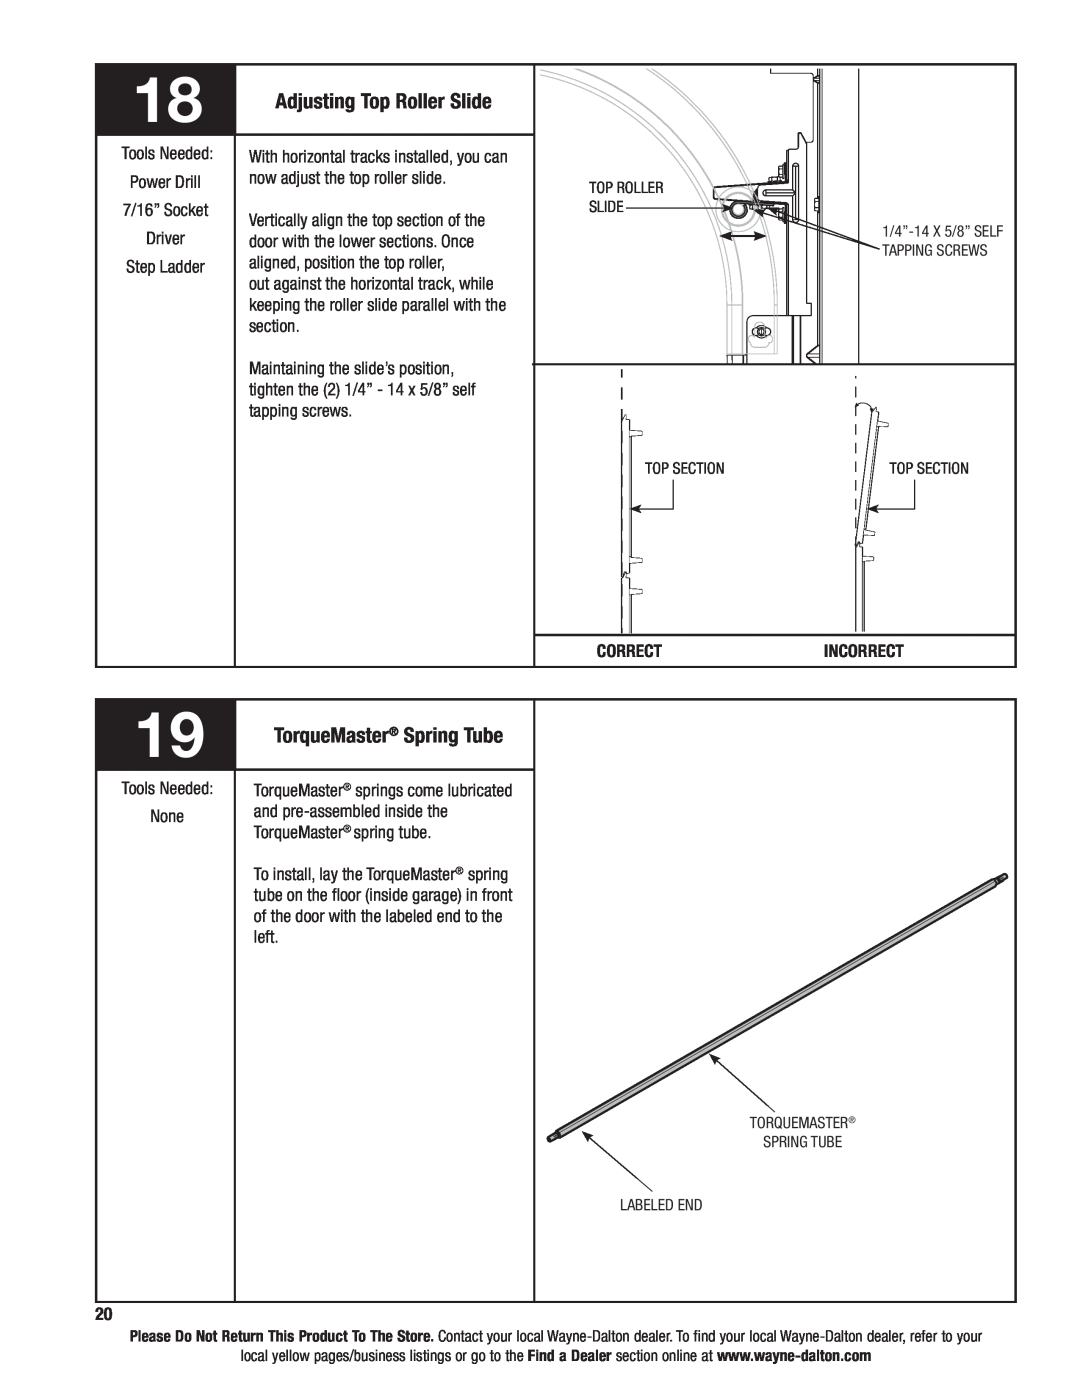 Wayne-Dalton 6100 installation instructions TorqueMaster Spring Tube, Adjusting Top Roller Slide 